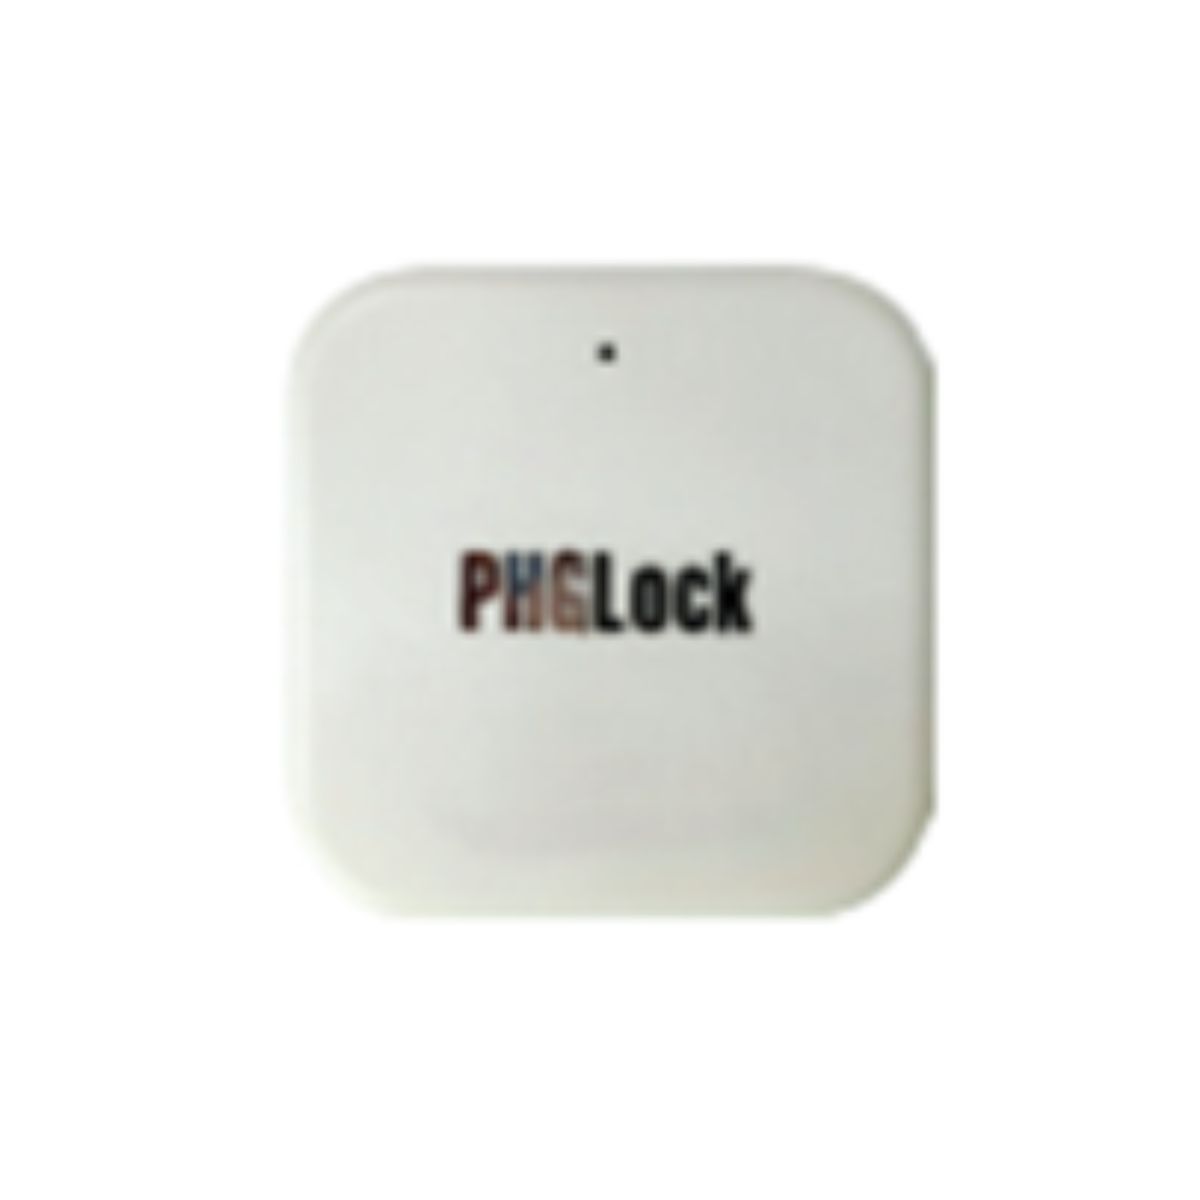 Thiết bị Gateway PHGLock kết nối với khóa và wifi quản lý từ xa